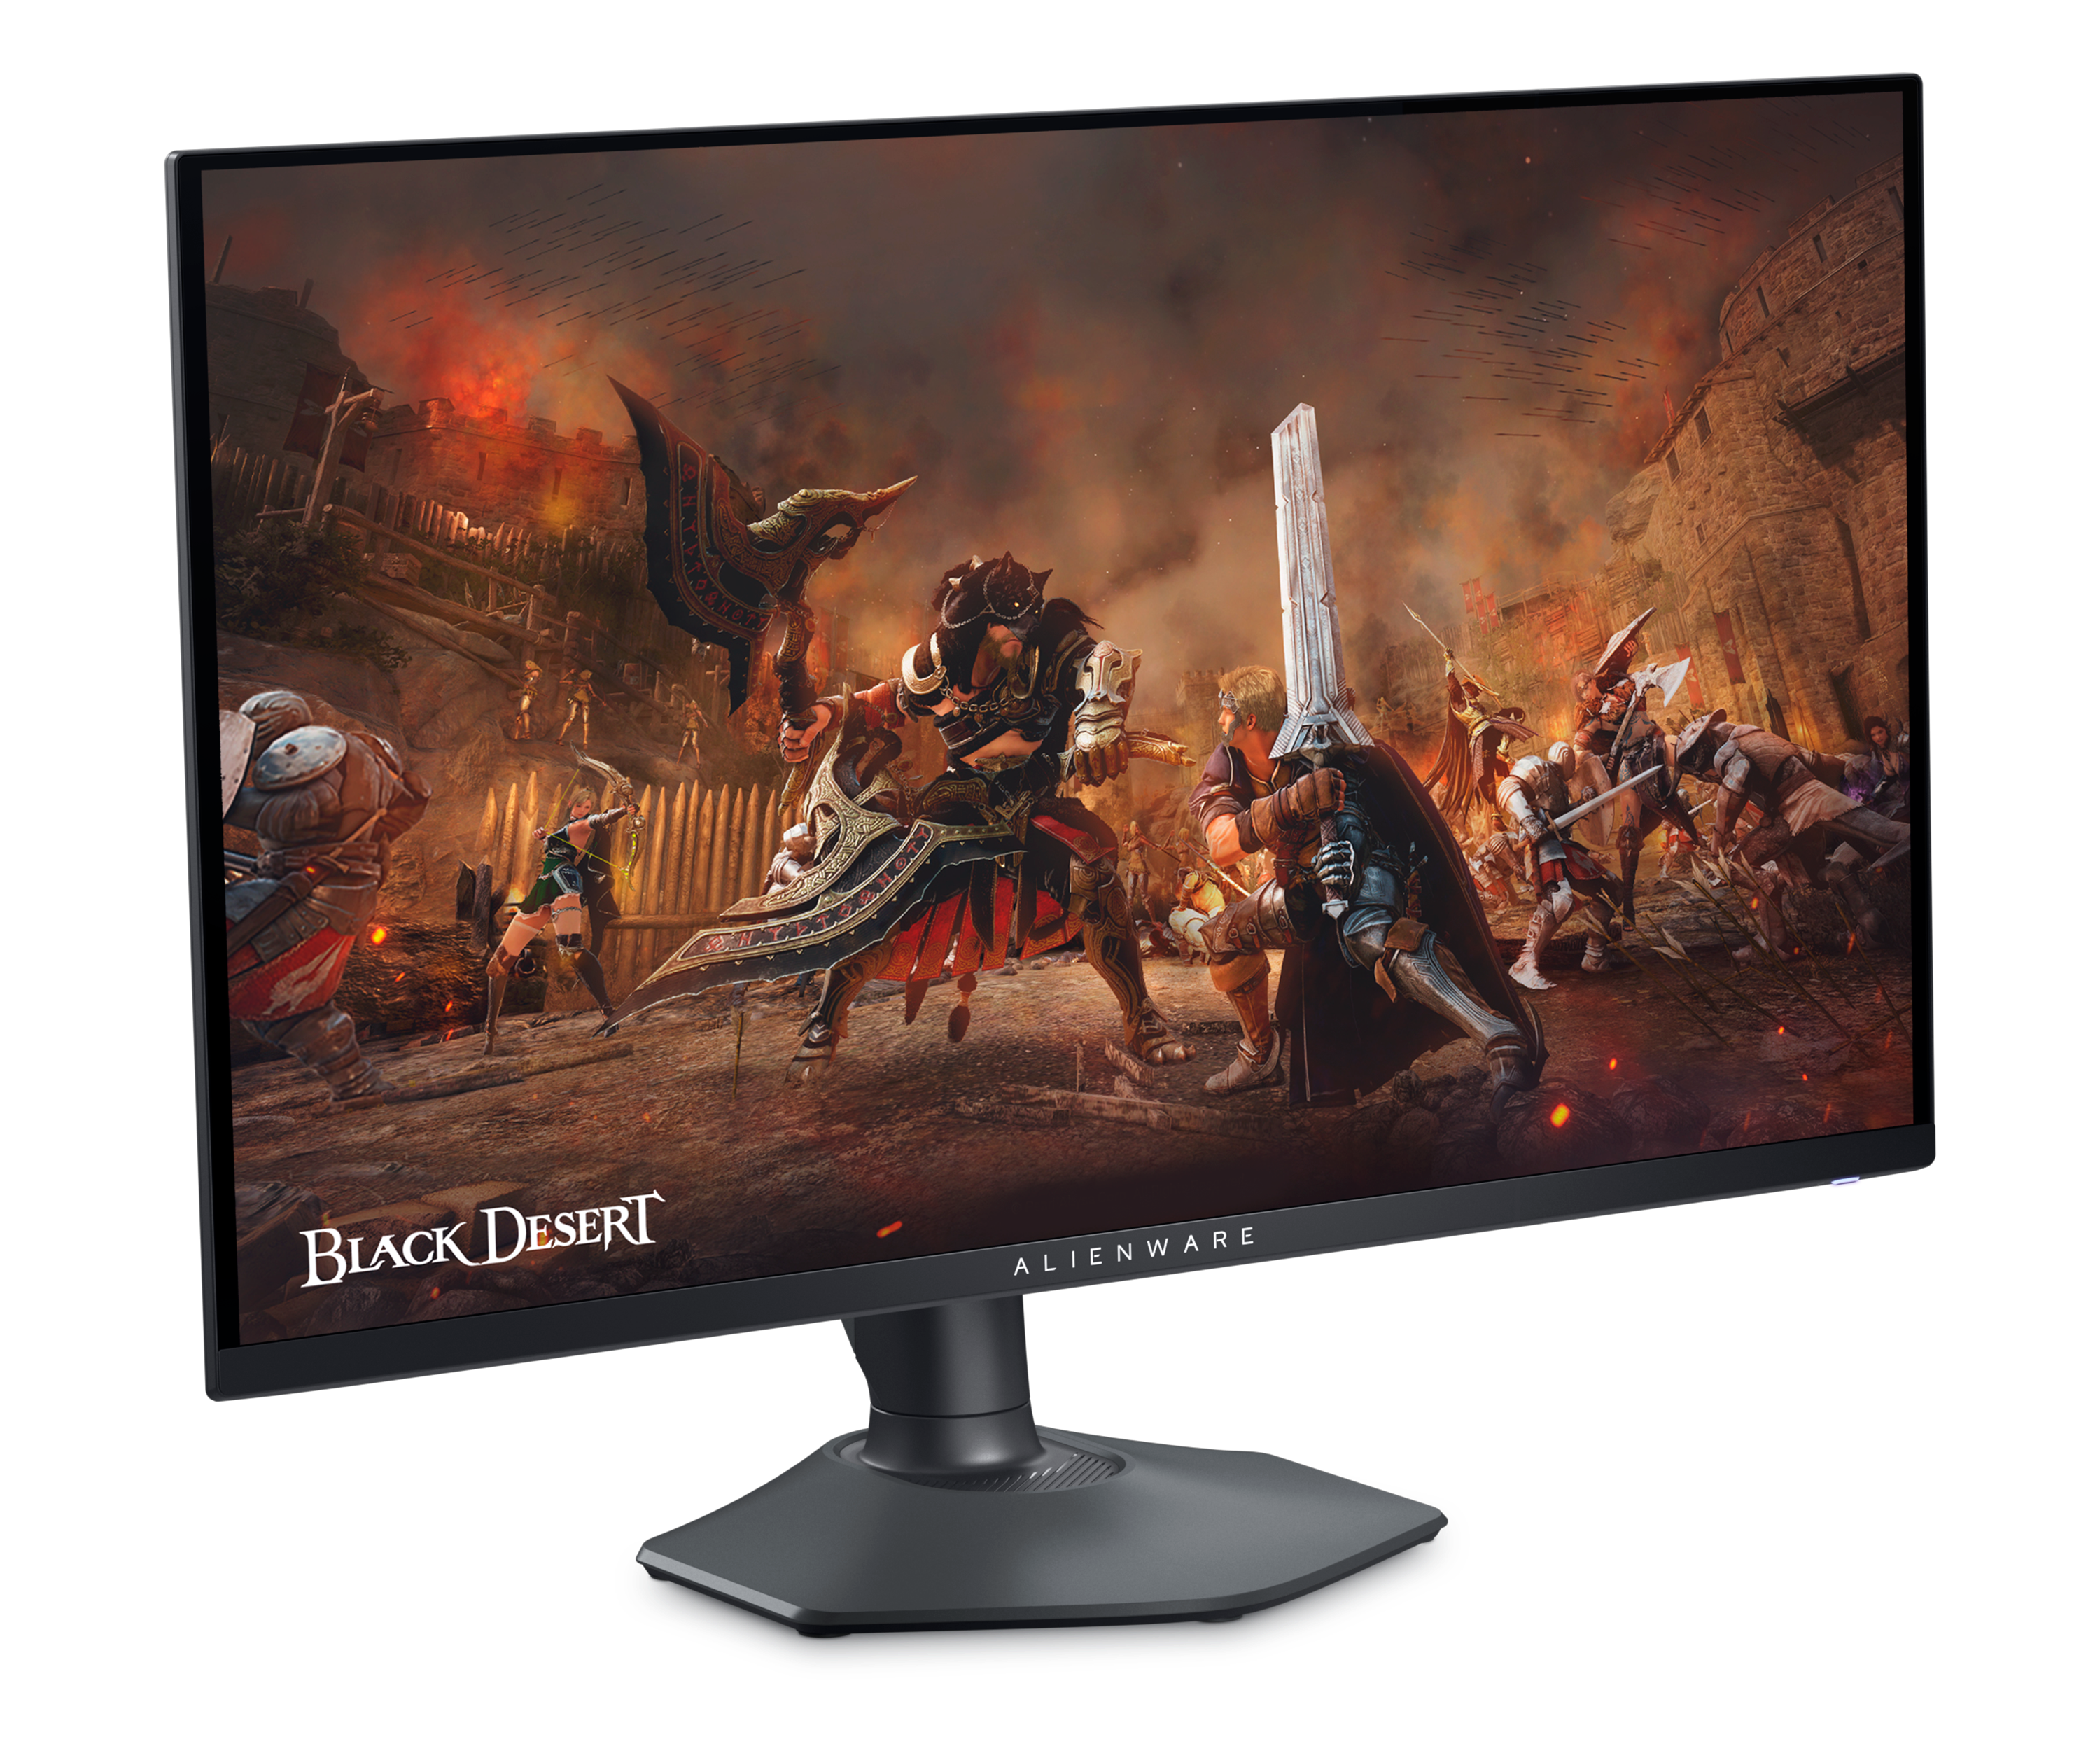 Dell AW2725DFゲーミング モニター。画面に「Black Desert」のゲーム イメージが表示されています。